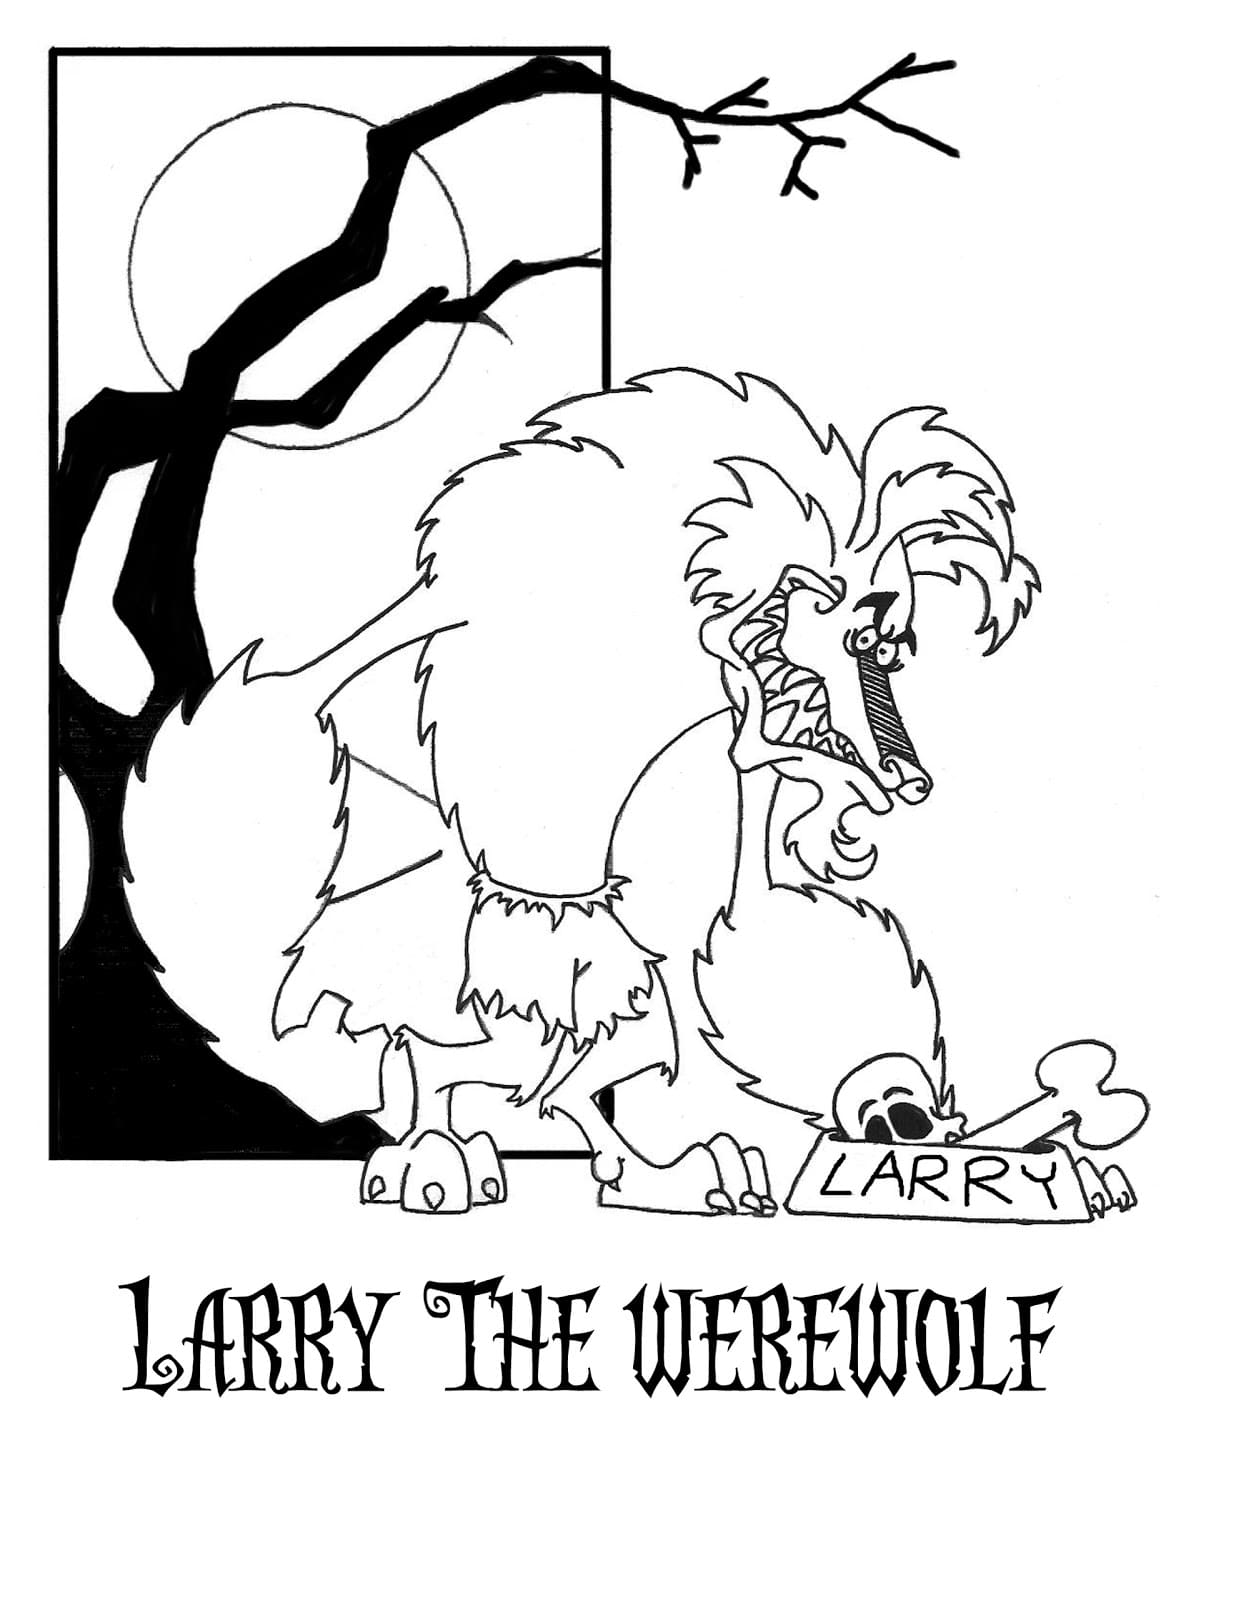 Werewolf Free Image